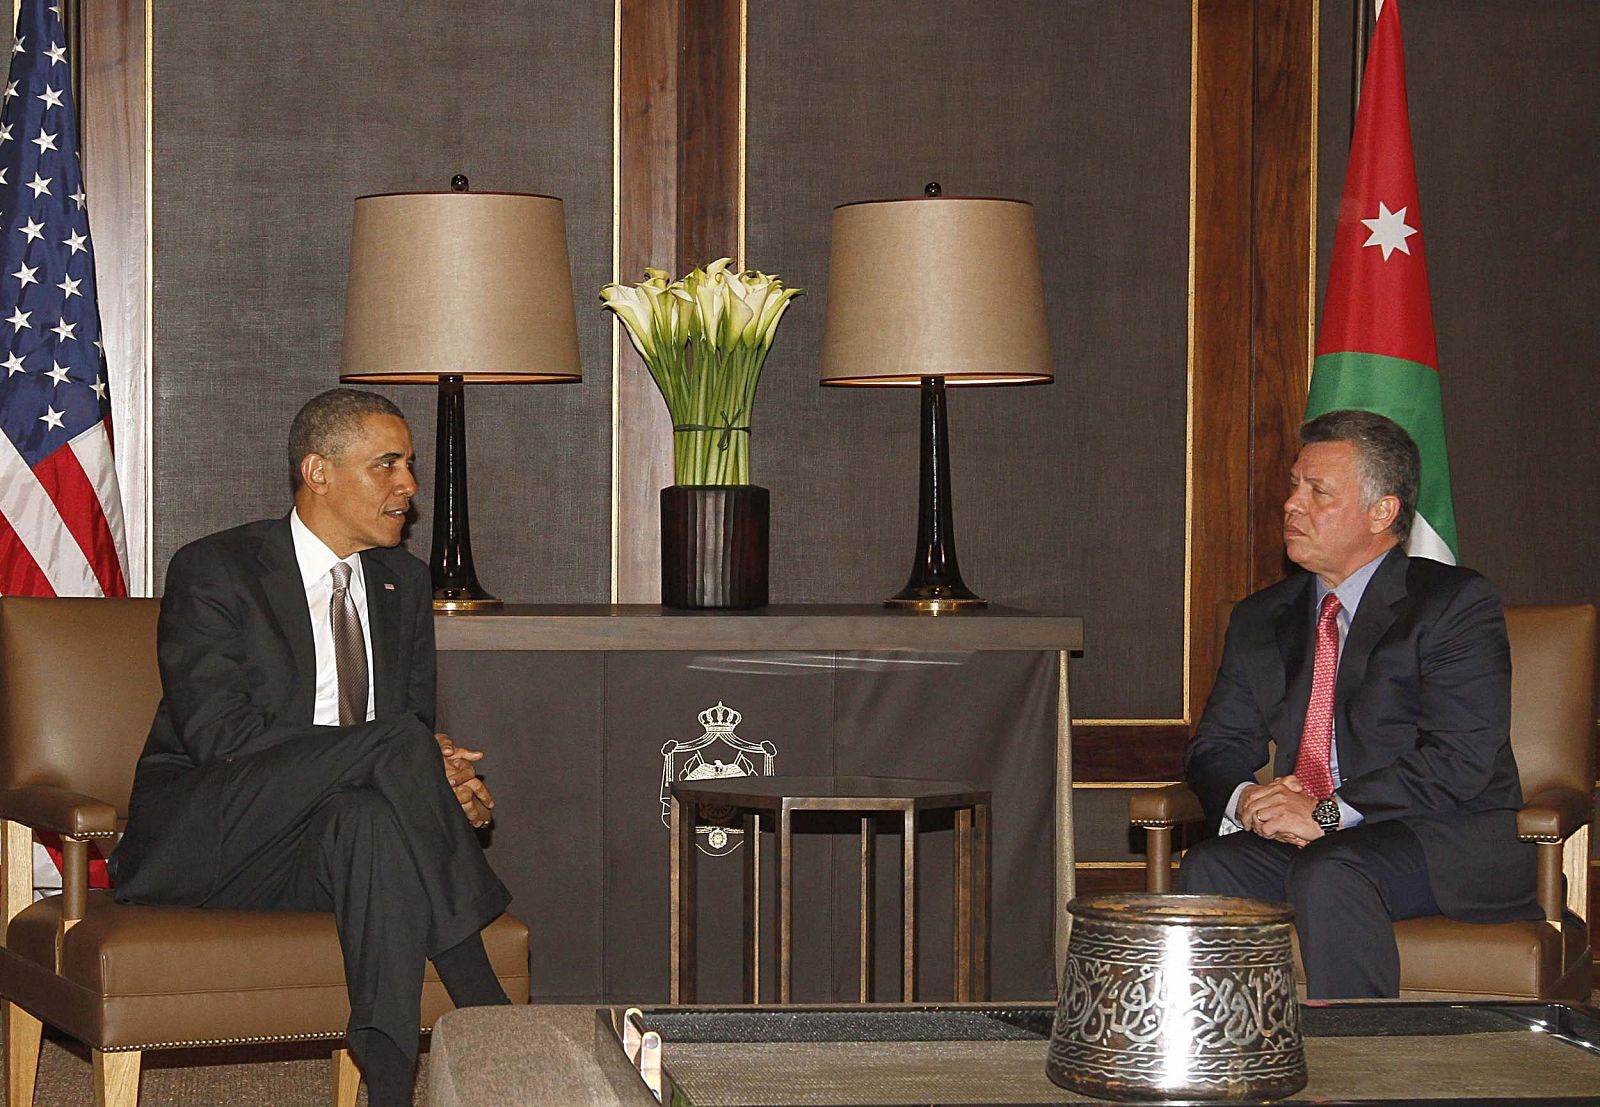 El rey Abdalá II de Jordania recibe a Barack Obama, que ha anunciado ayuda económica para la asistencia a los refugiados sirios